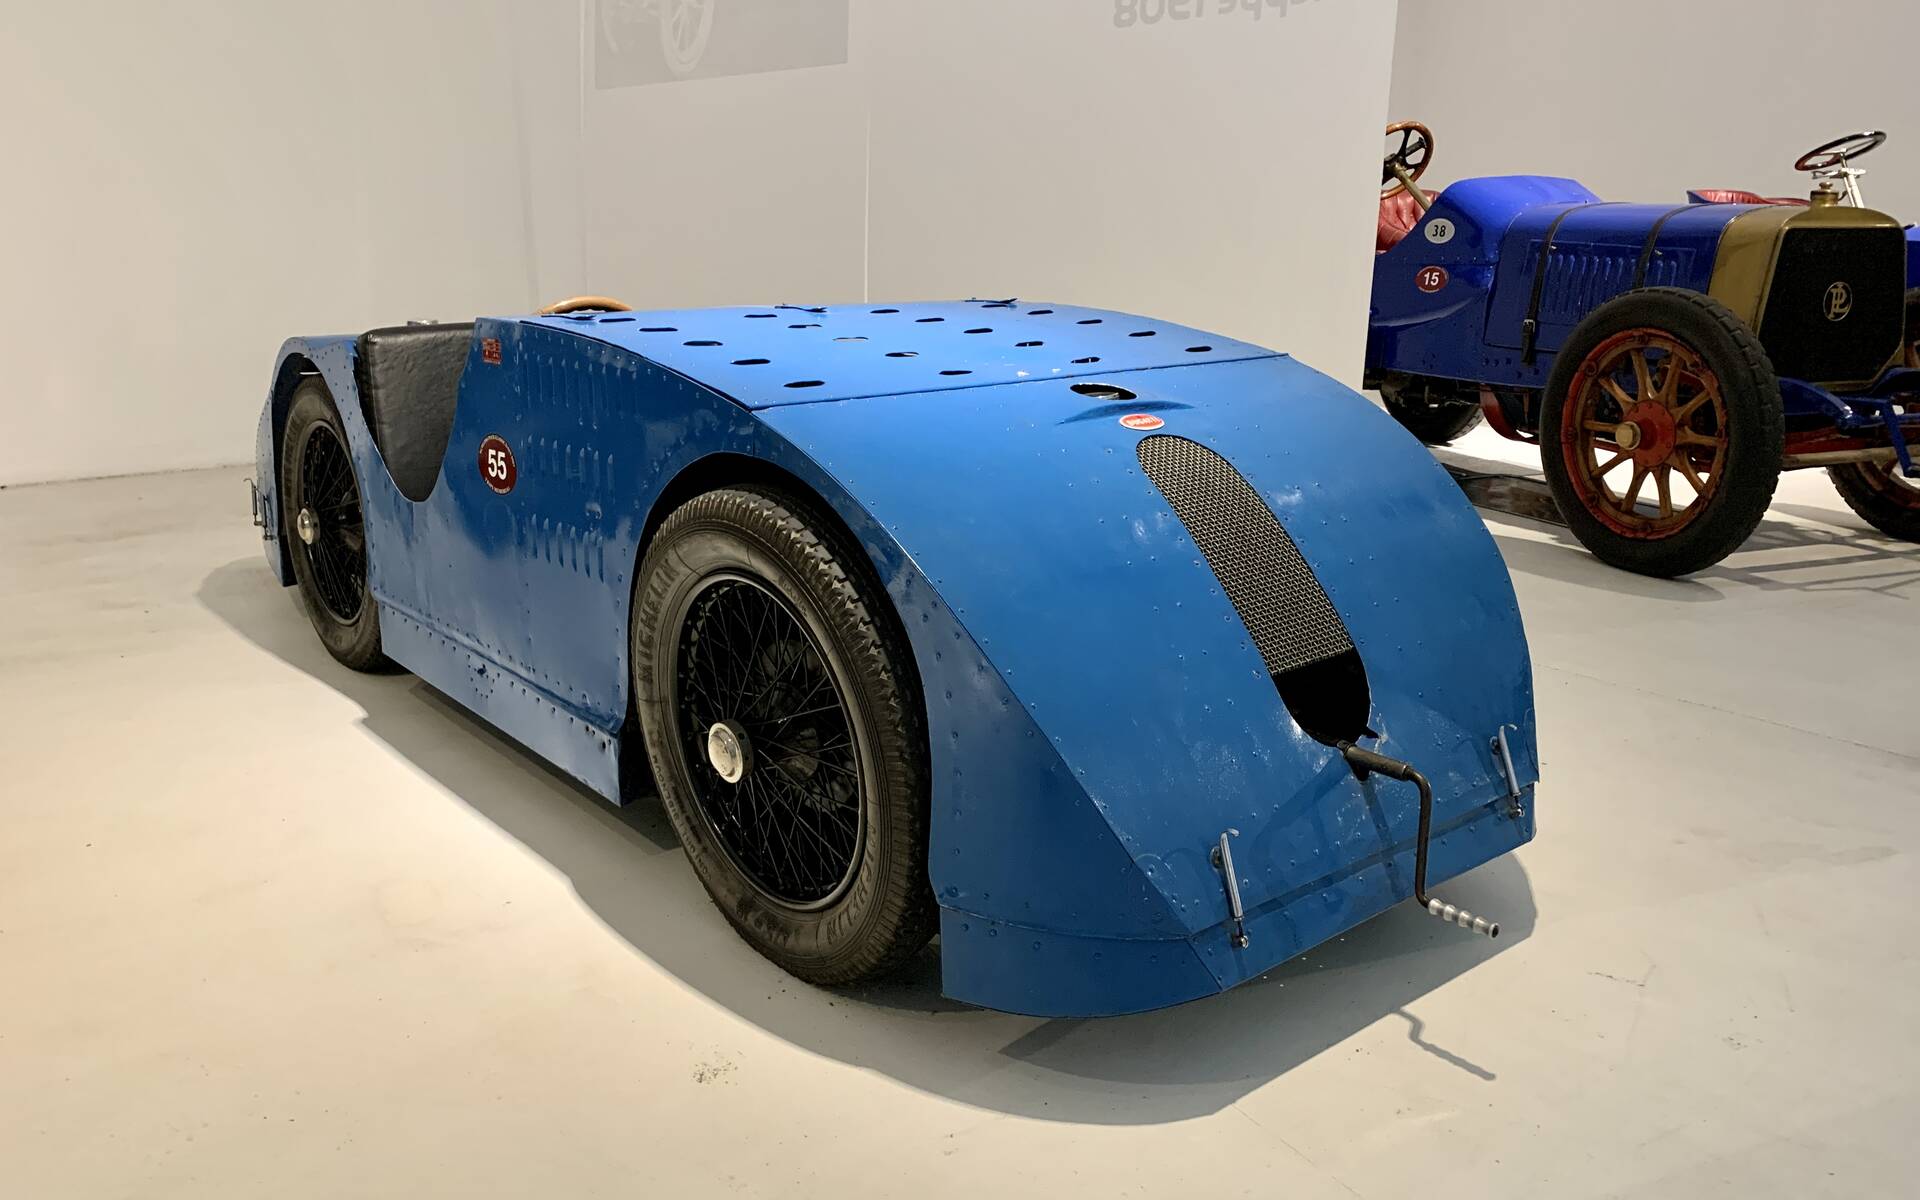 En photos : une centaine de Bugatti réunies dans un même musée 503085-en-photos-des-dizaines-de-bugatti-reunies-dans-un-meme-musee